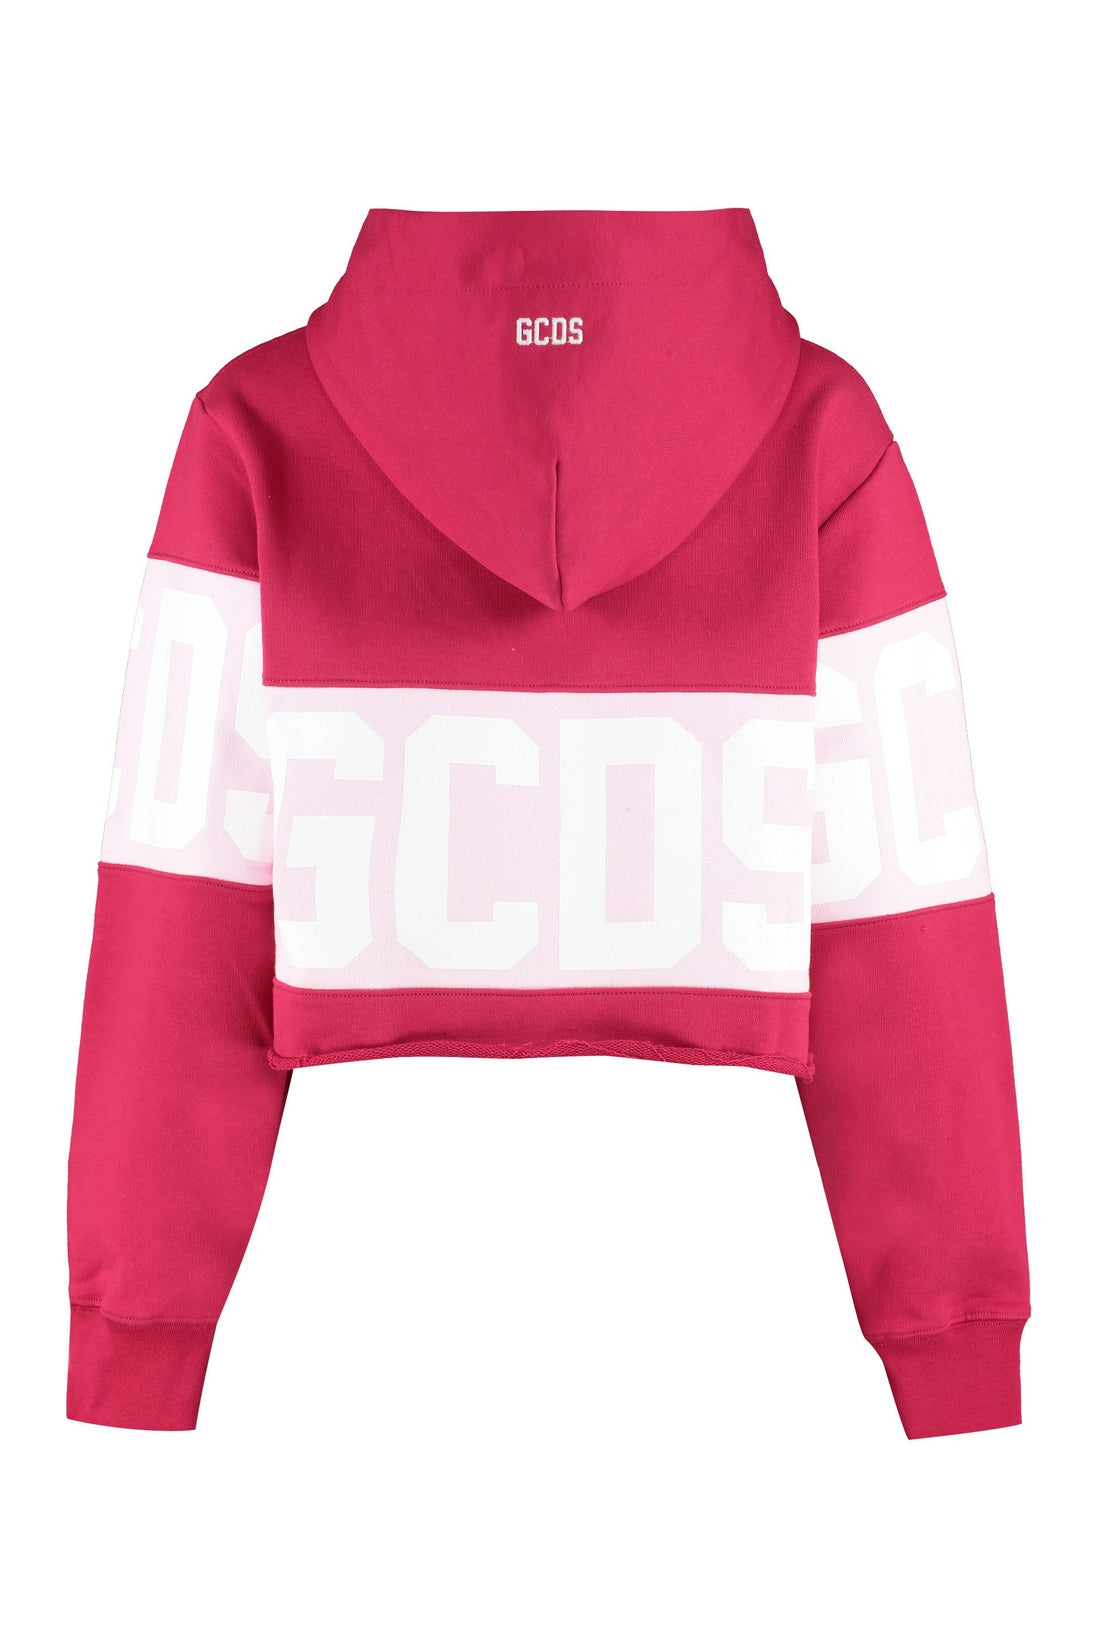 GCDS-OUTLET-SALE-Logo cotton hoodie-ARCHIVIST